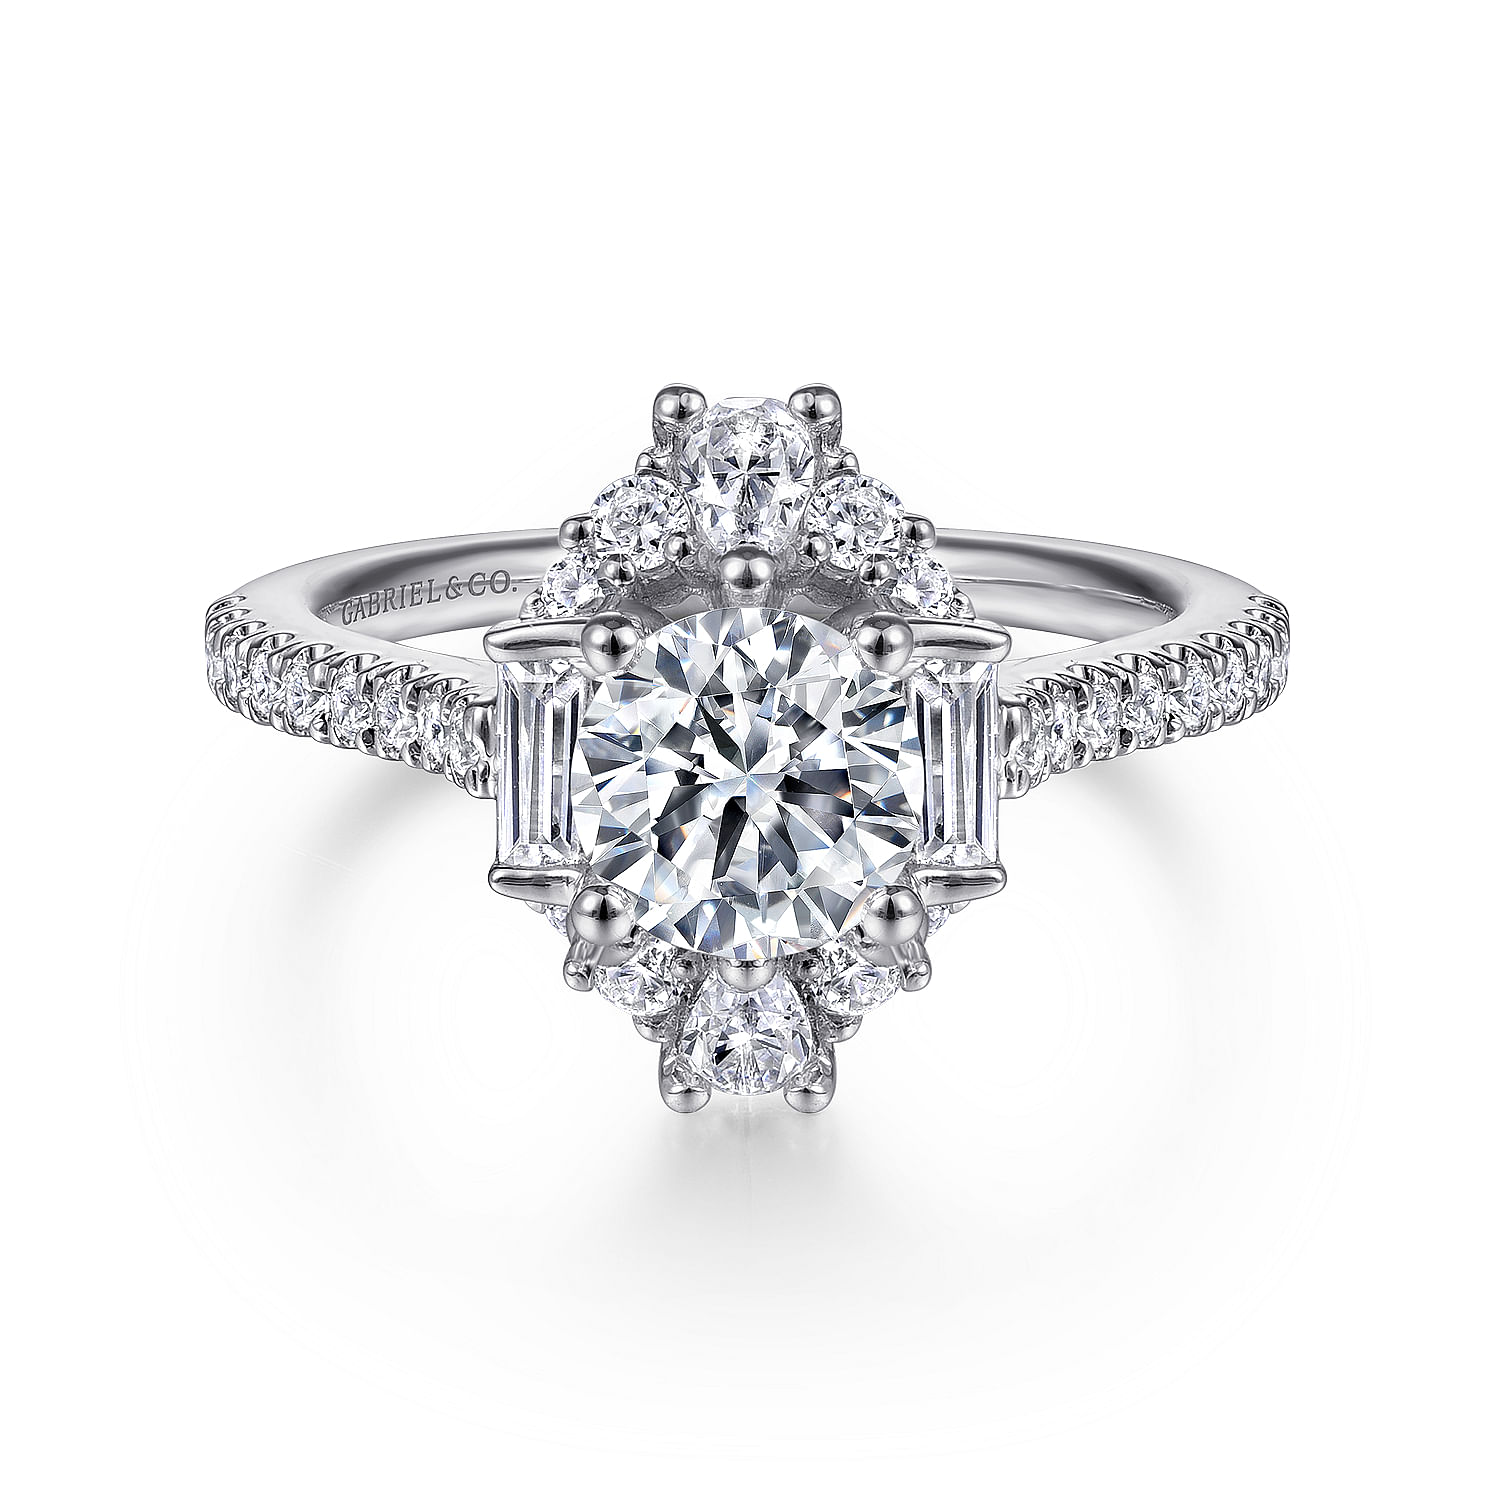 Carrington - Unique 14K White Gold Art Deco Halo Diamond Engagement Ring